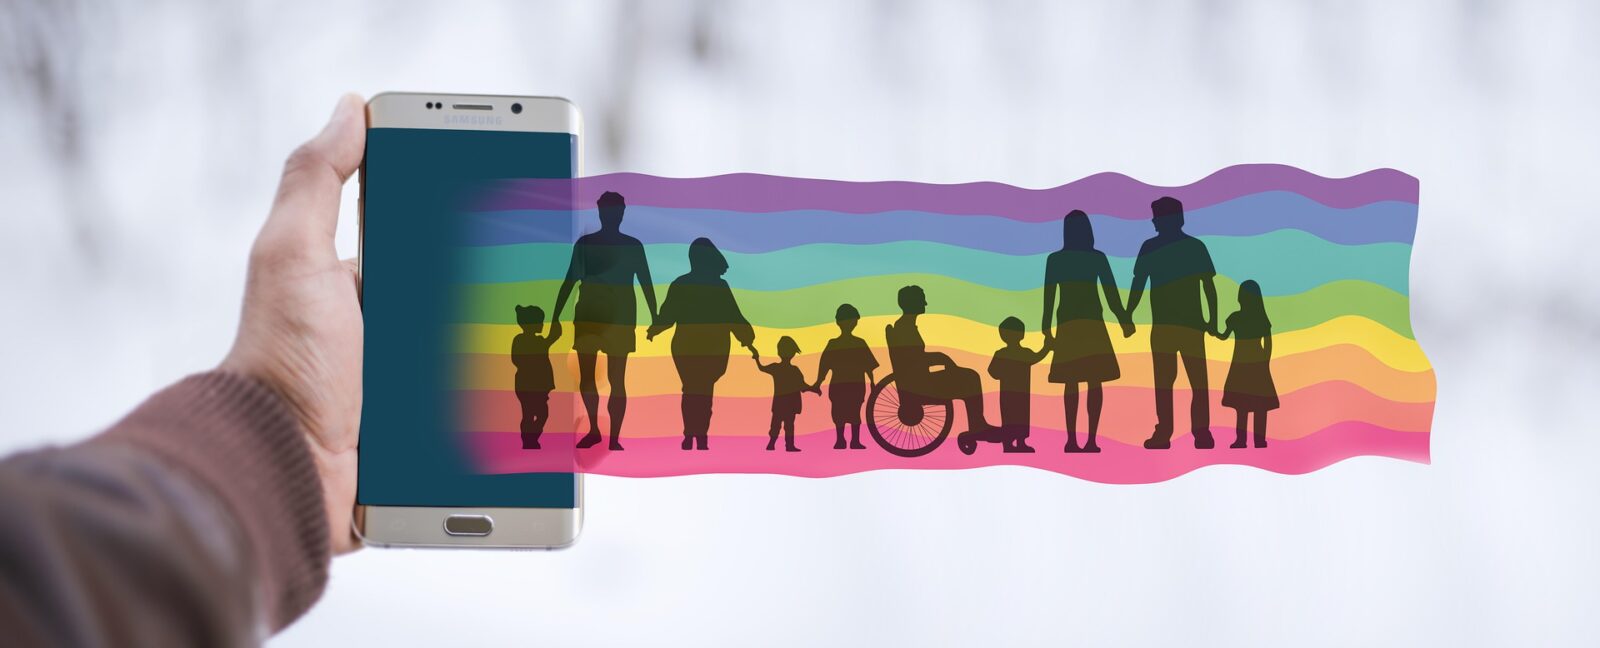 Aus einem Smartphone kommt ein Regenbogen, auf dem viele verschiedene Menschen zu sehen sind: Groß und klein, dick und dünn, alt und jung, mit und ohne Behinderung